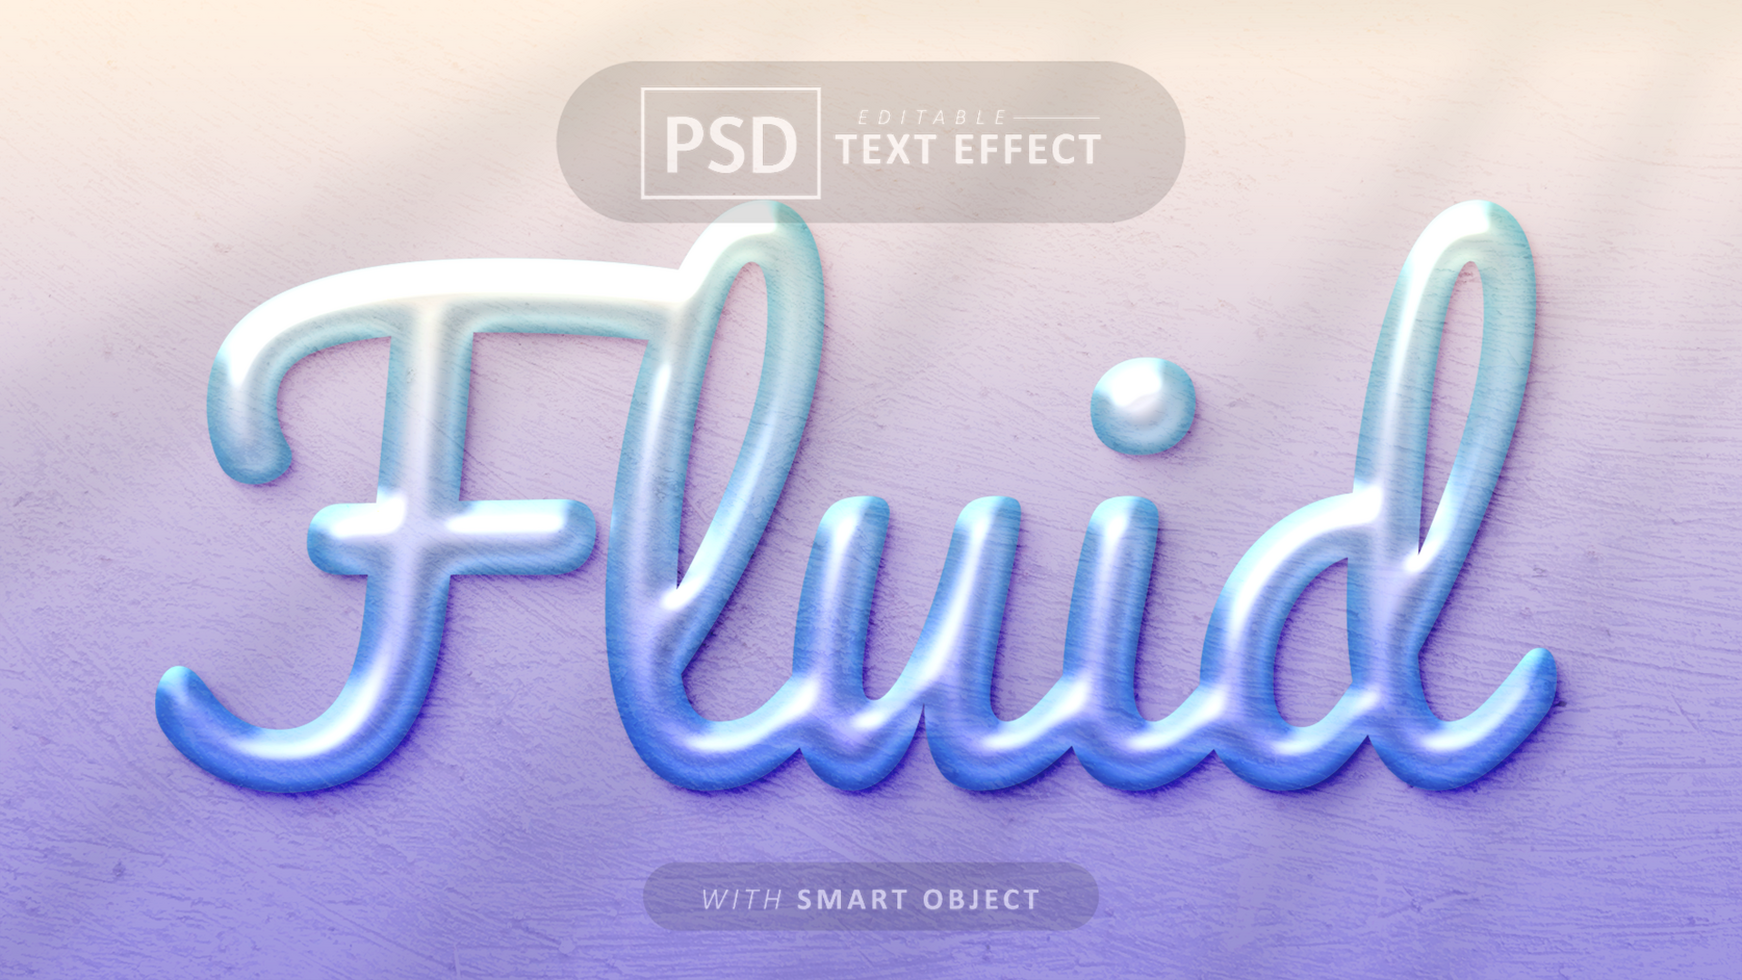 Fluid text effect editable psd